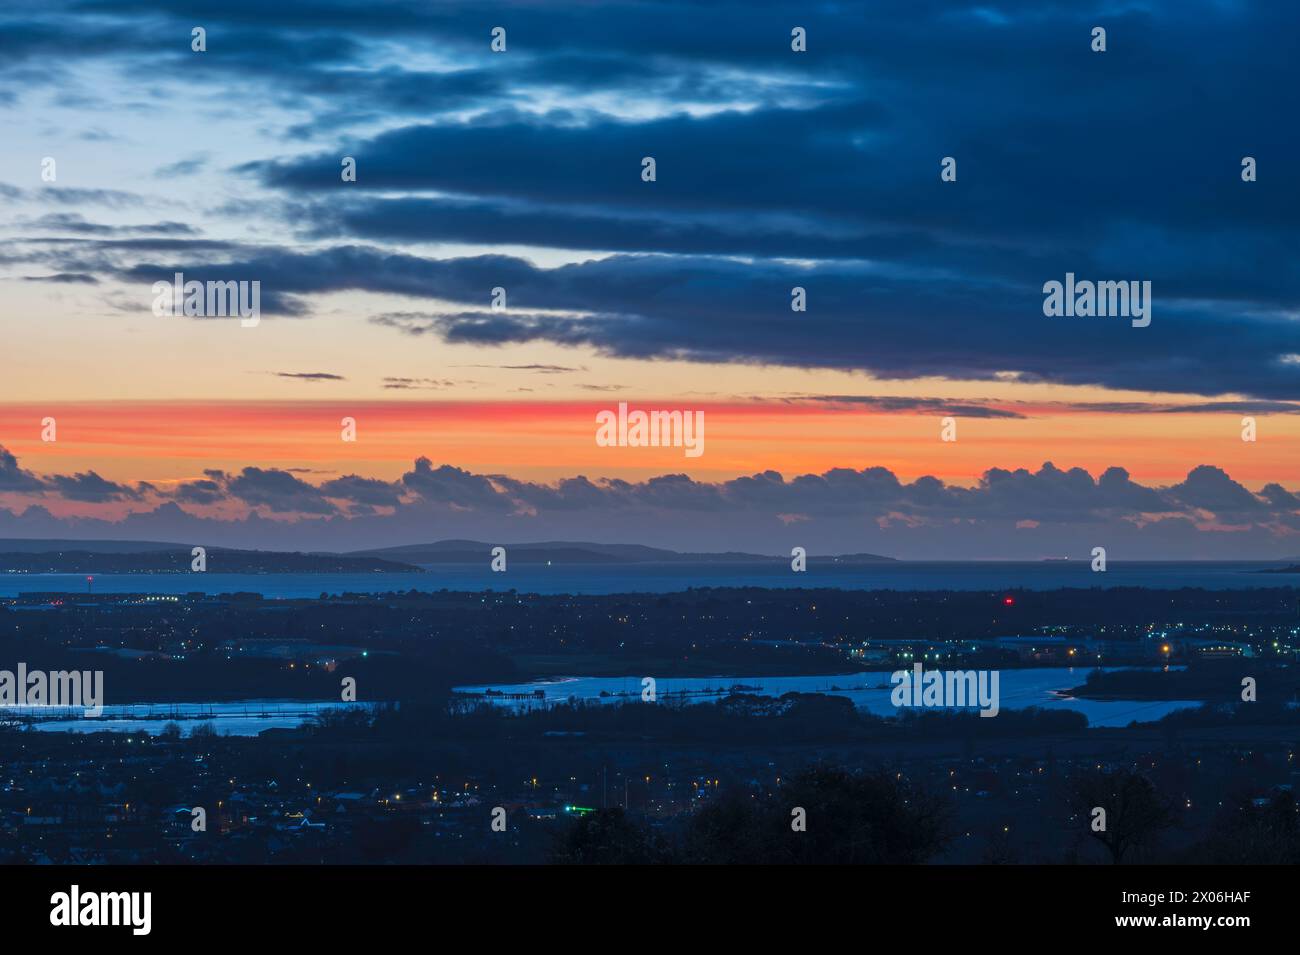 Vue nocturne juste après le coucher du soleil, de f Portsdown Hill, surplombant Portsmouth, Hampshire, Angleterre, Royaume-Uni, direction Fareham et l'île de Wight. Banque D'Images